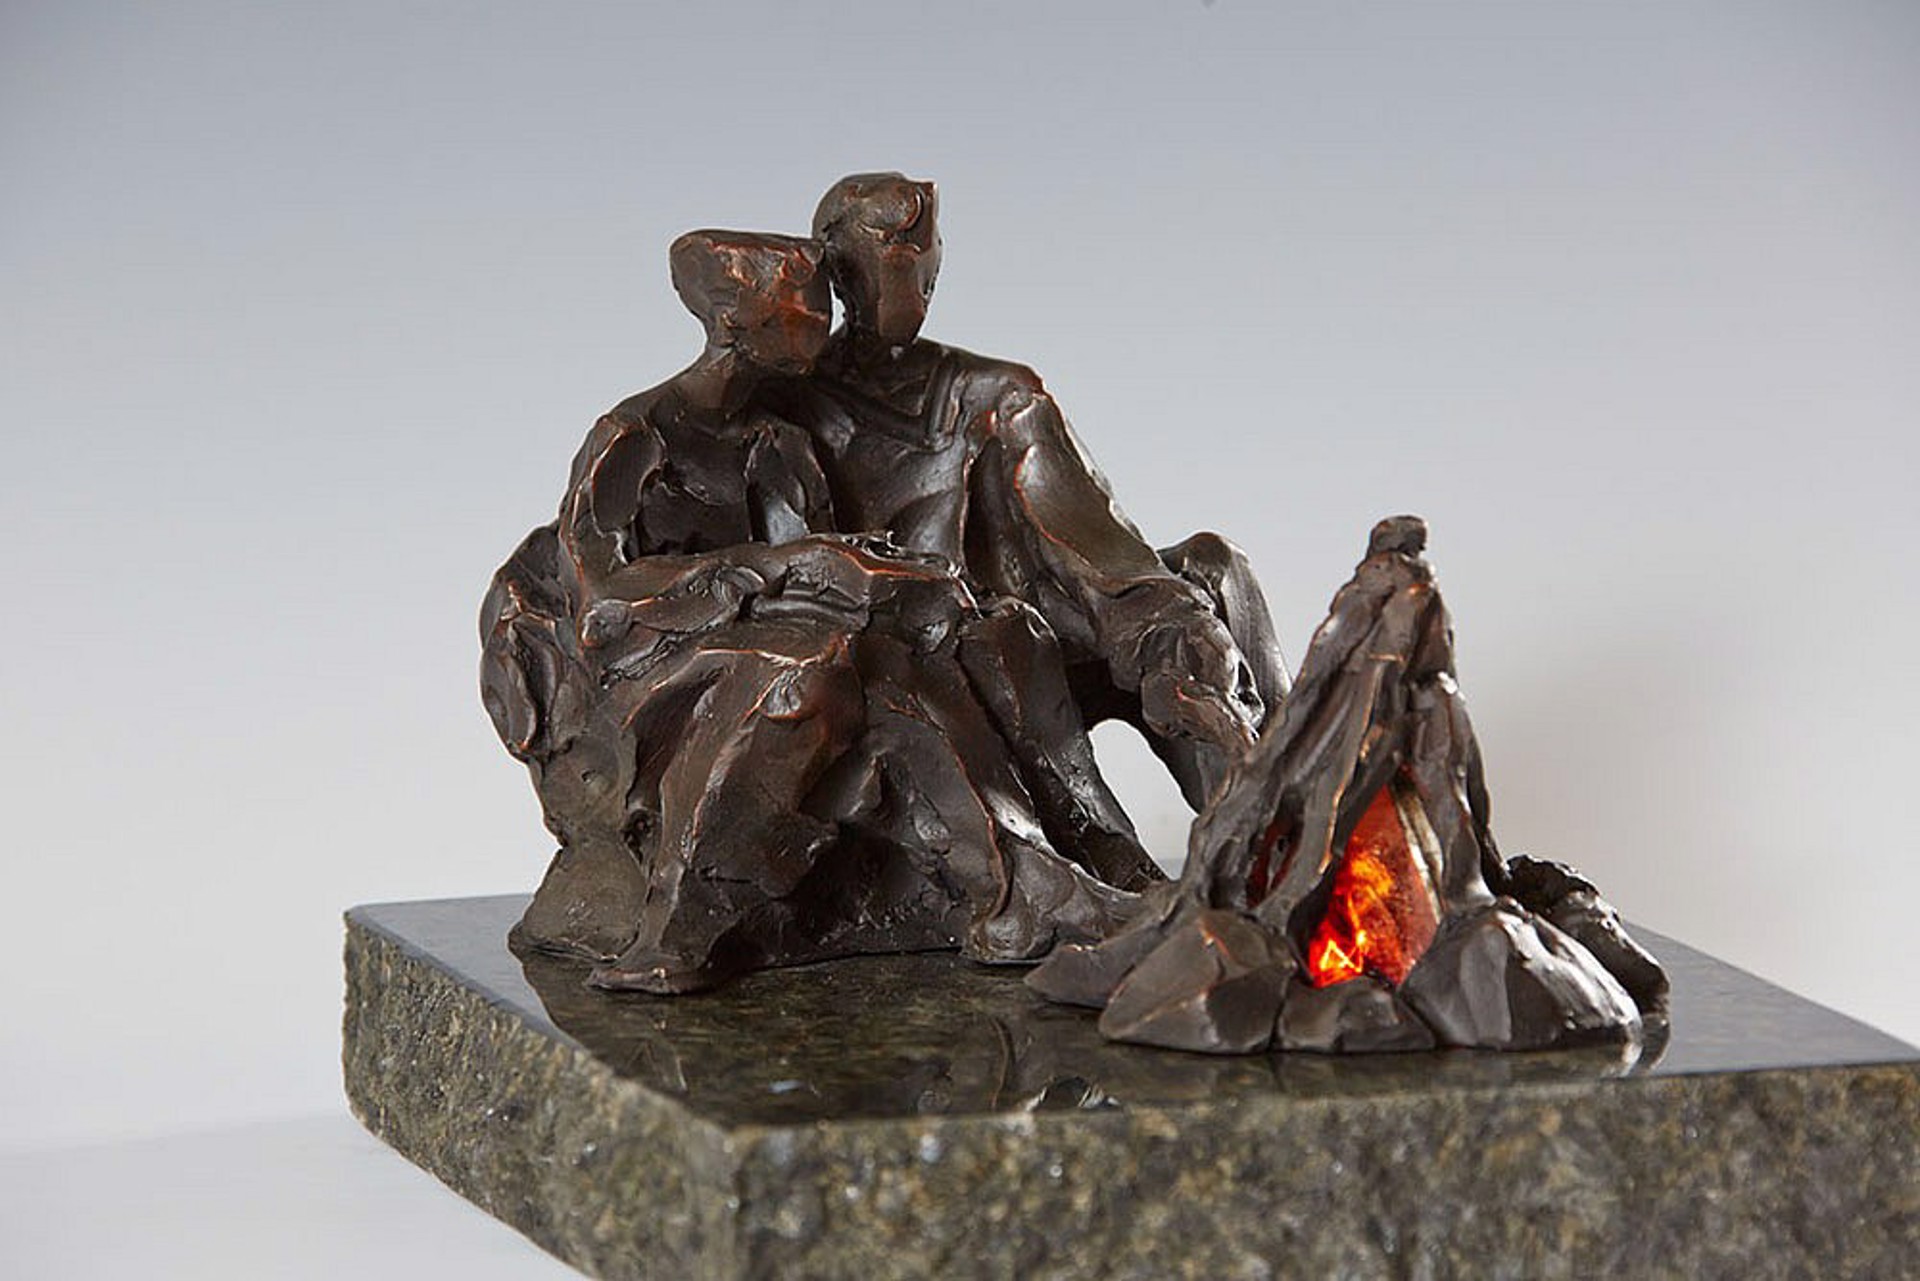 Tending the Fire by Jane DeDecker